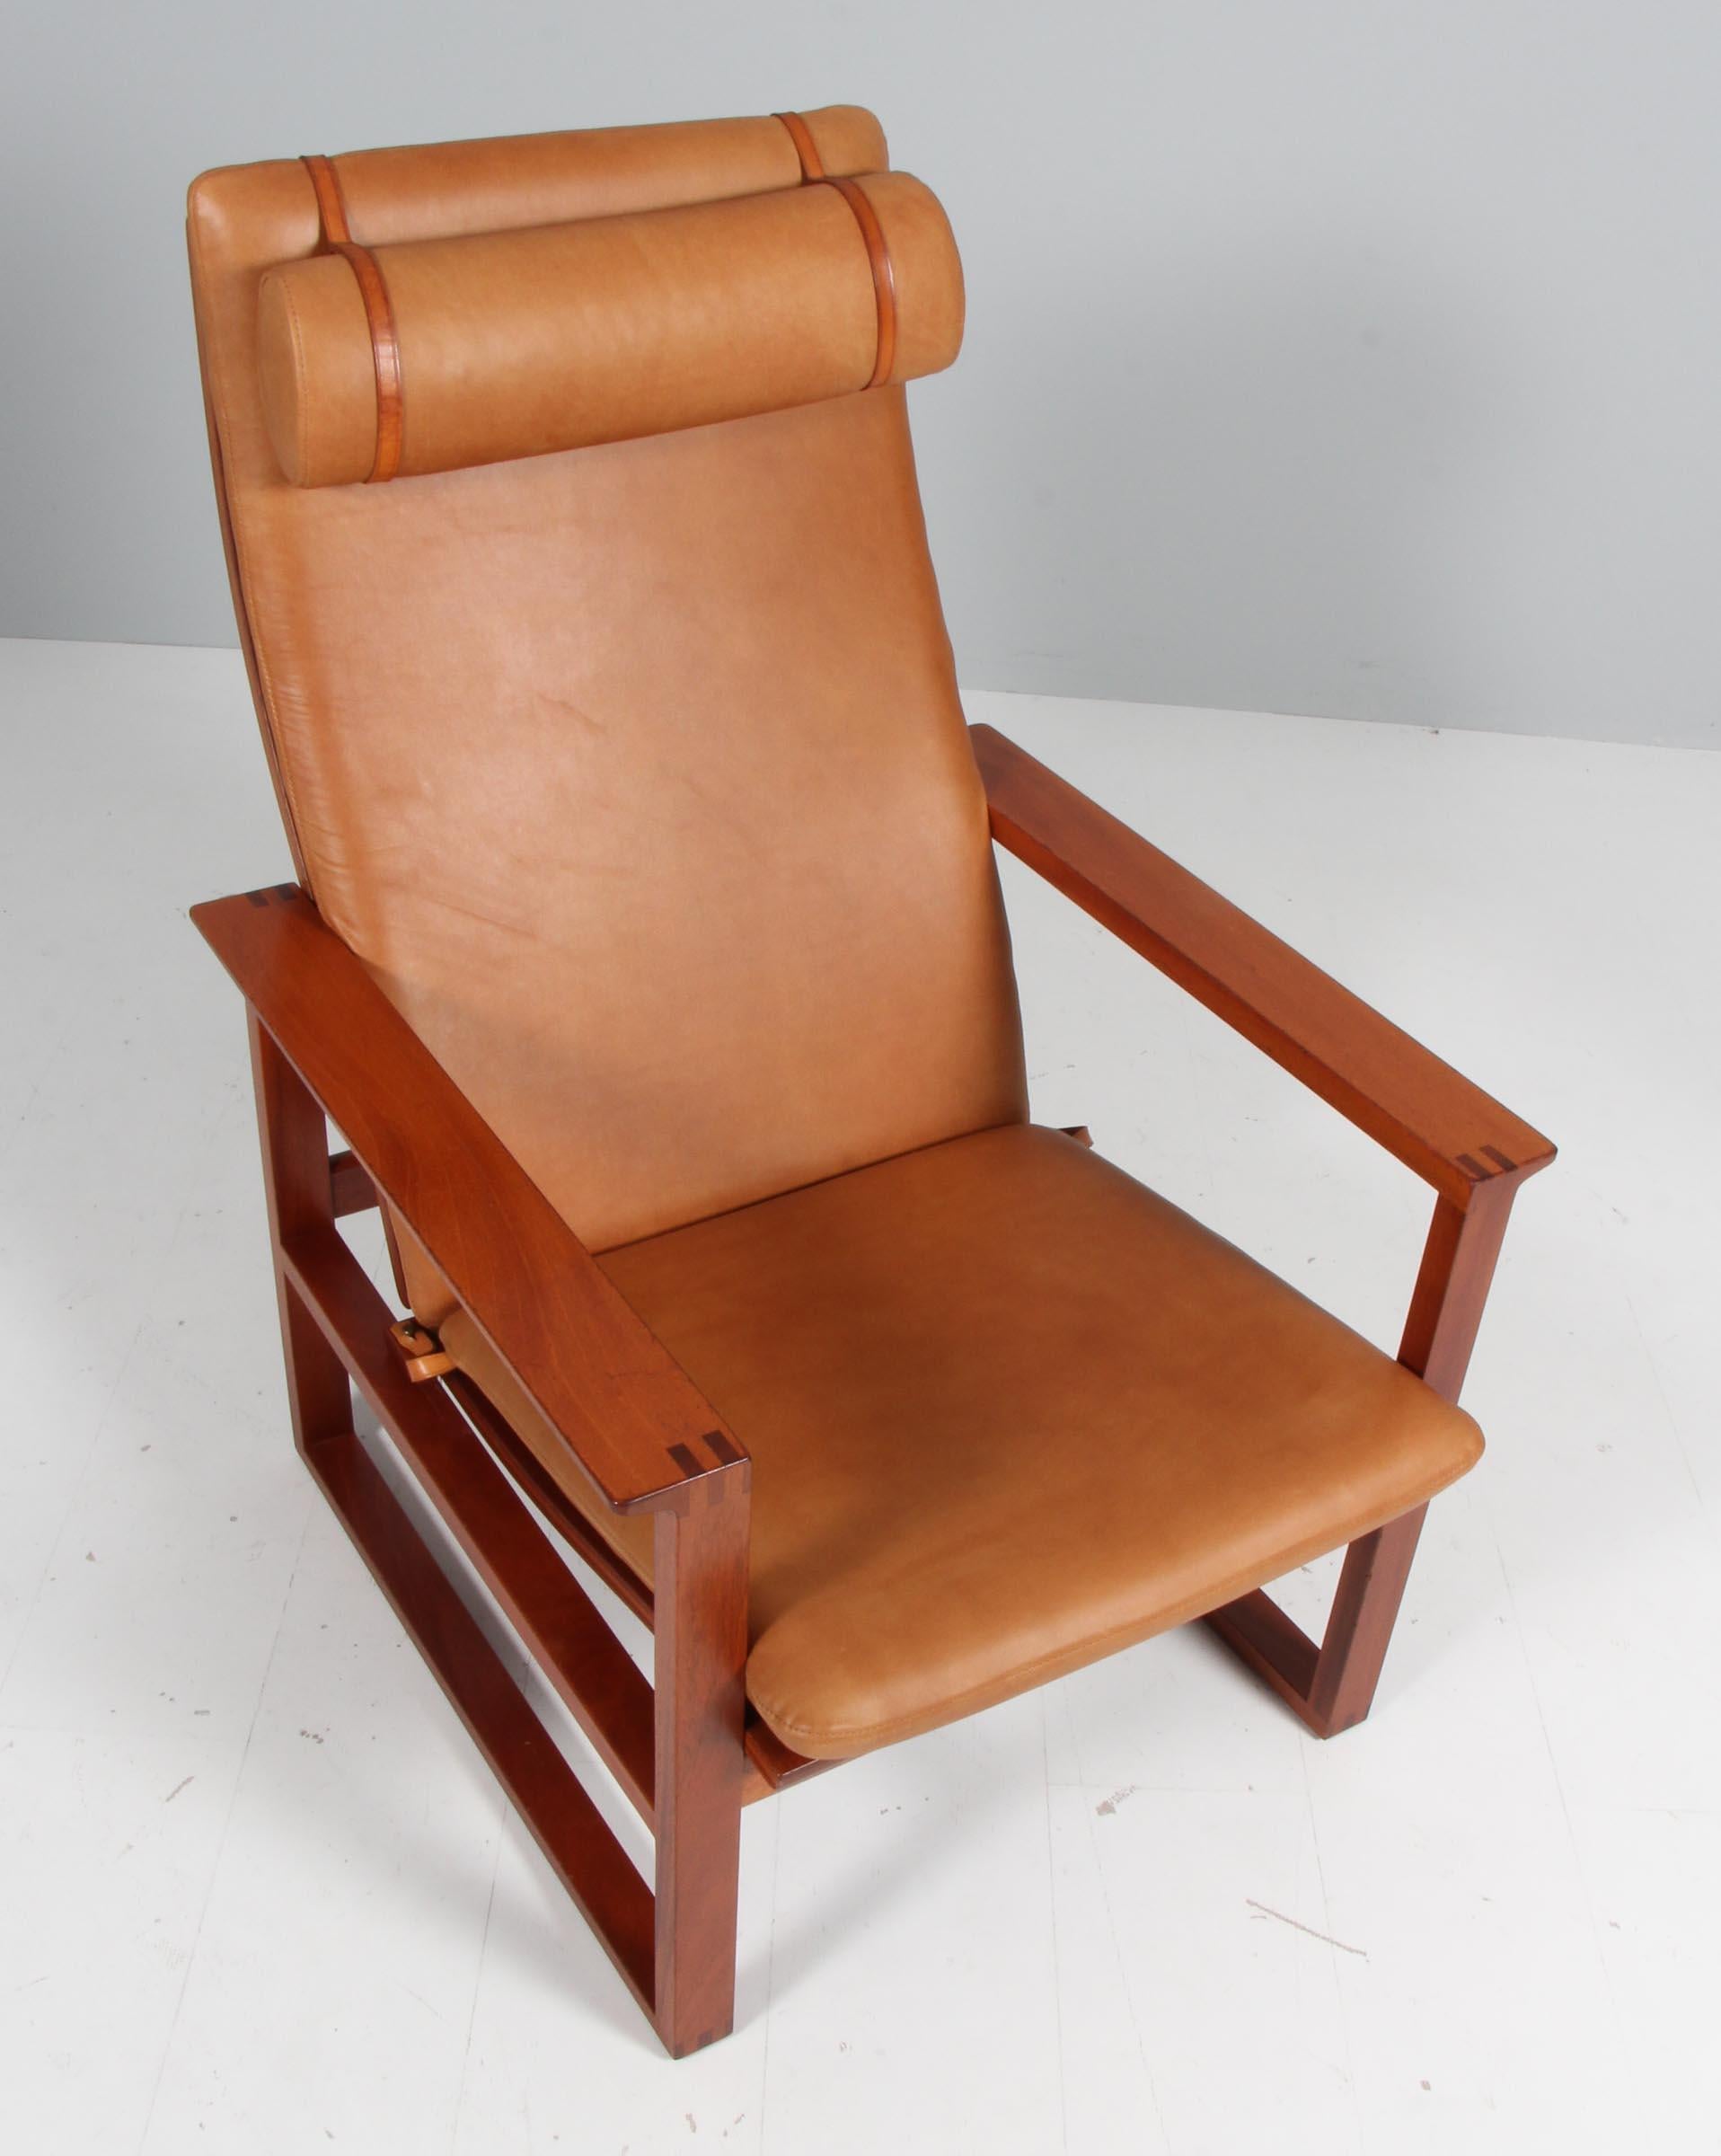 Chaise longue de Børge Mogensen conçue en 1956, numéro de modèle 2254, pour Fredericia Stolefabrik. Cadres cubiques en acajou massif, avec jointures digitales et cannage. 

Rembourré en cuir aniline vintage. Le coussin du siège peut être fixé à